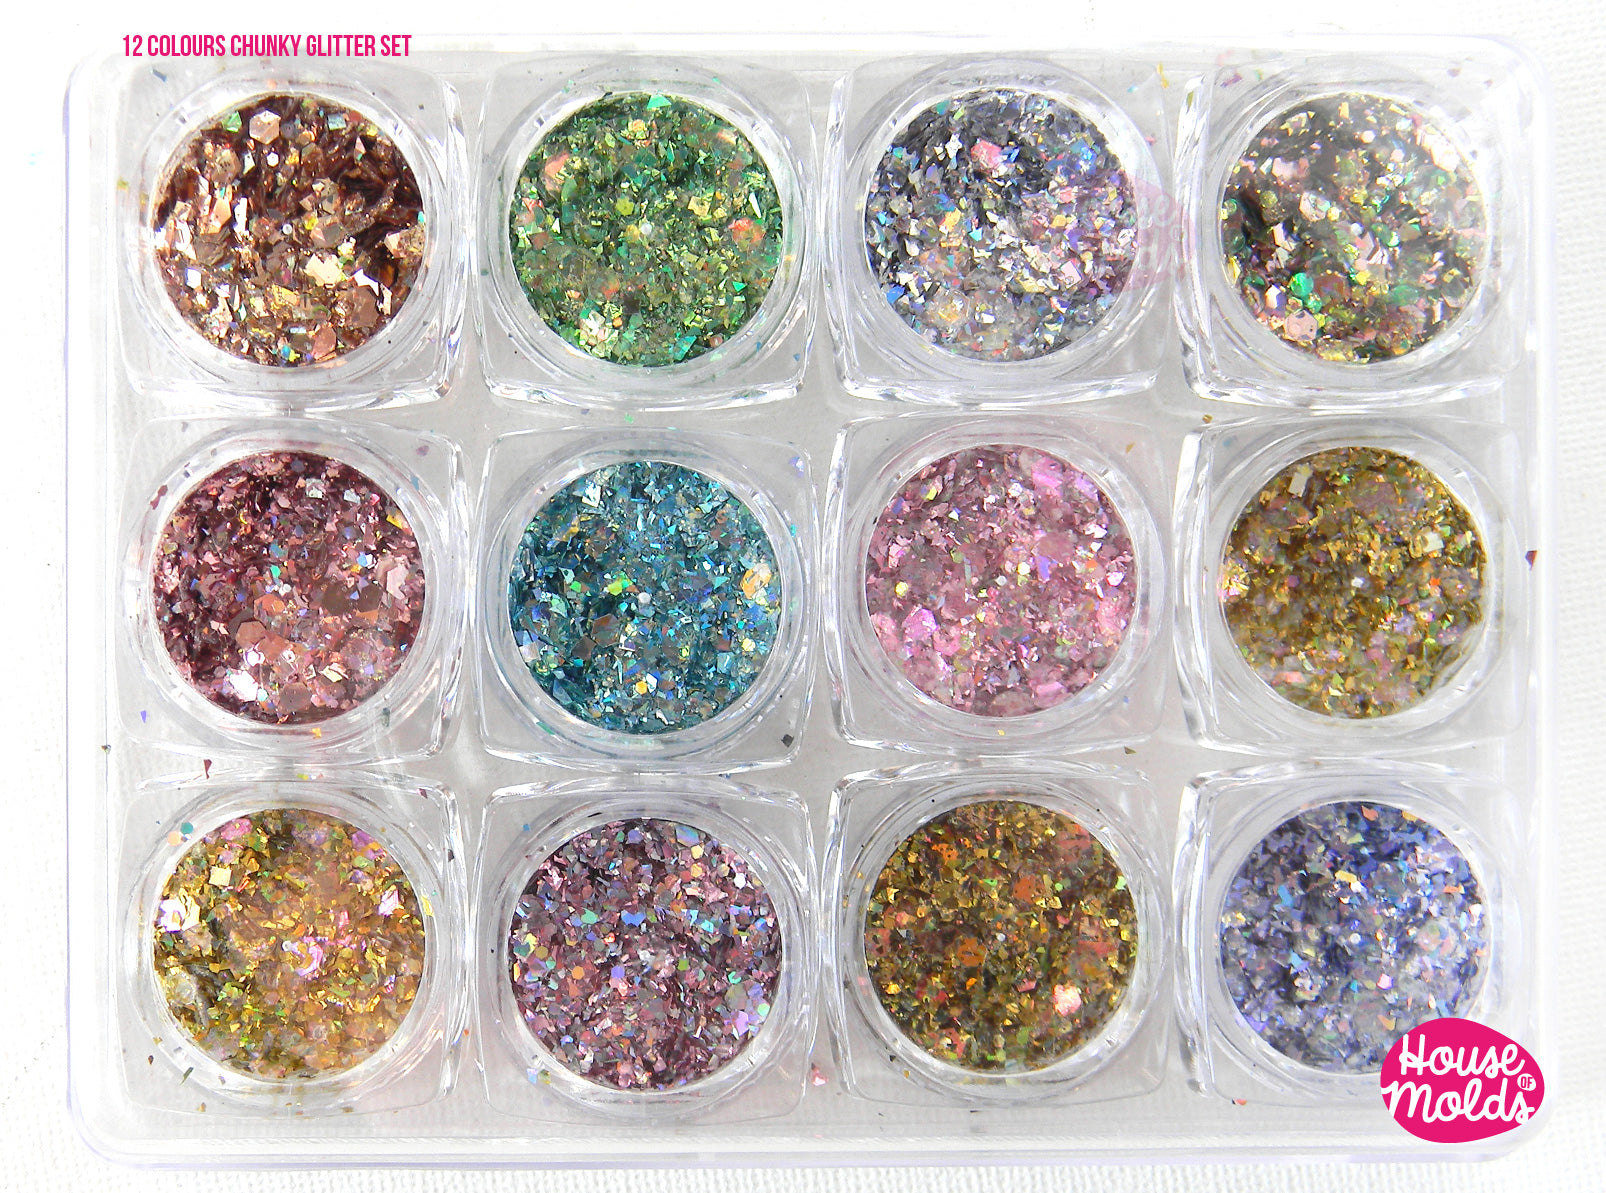 Assorted Iridescent Pink Glitter in Hexagon Shape (5 pcs), Aurora Bor, MiniatureSweet, Kawaii Resin Crafts, Decoden Cabochons Supplies